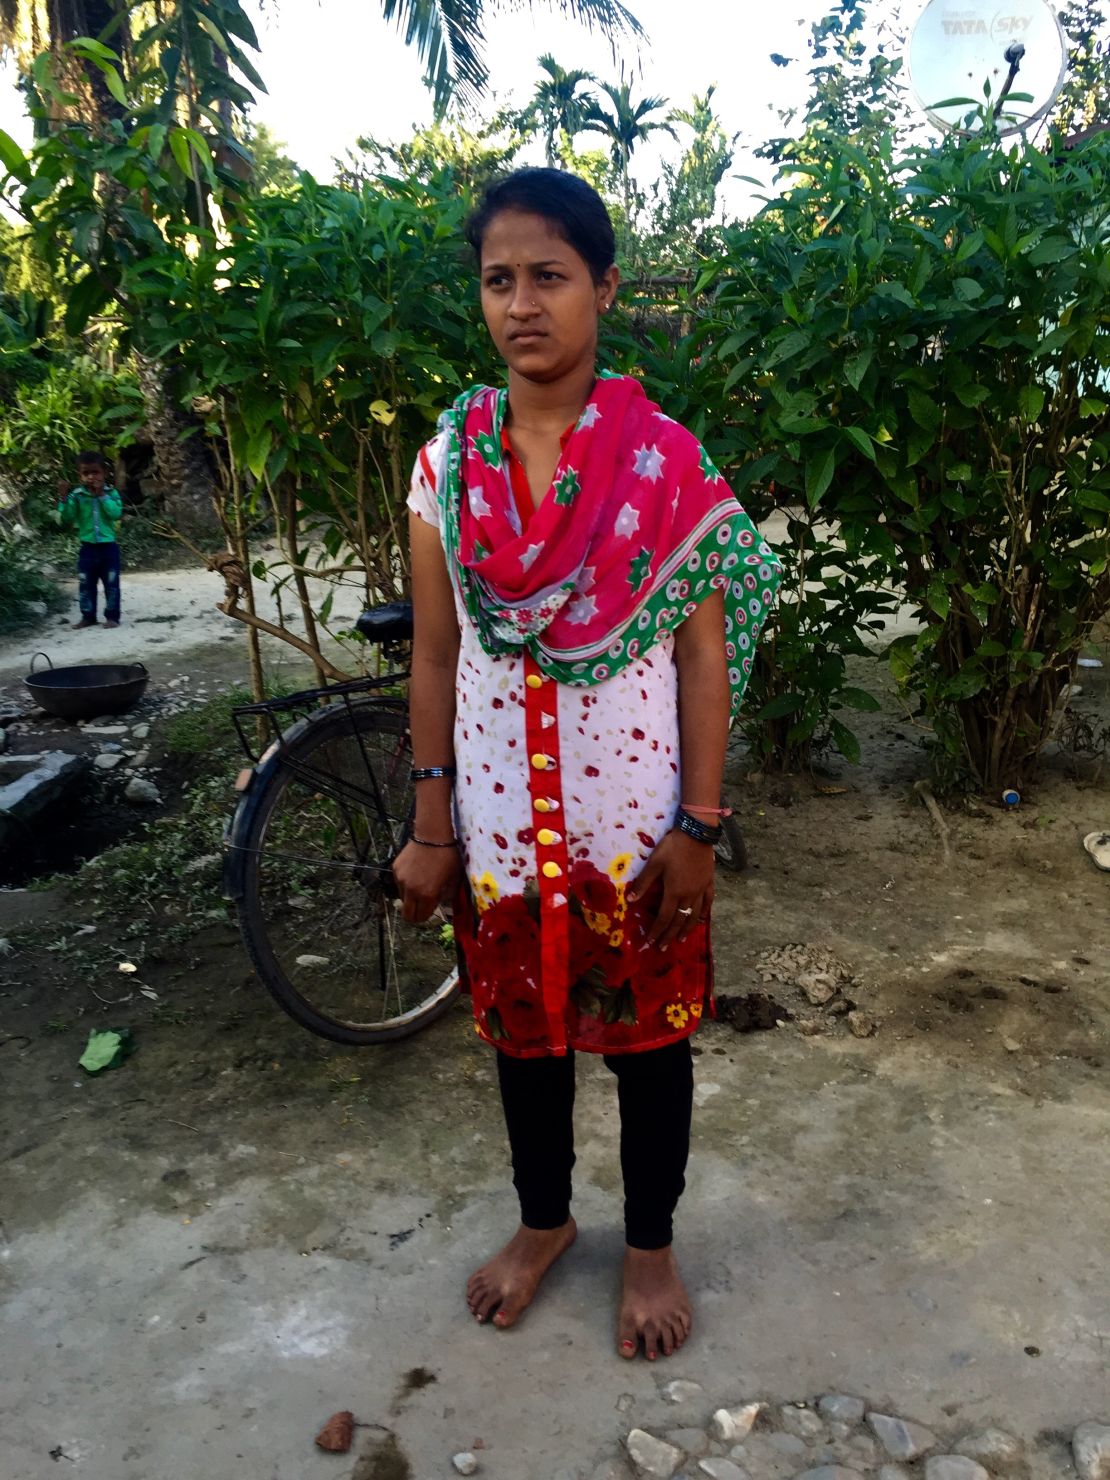 Manju Gaur left her home village in rural tea-producing India to find her sister in Delhi.